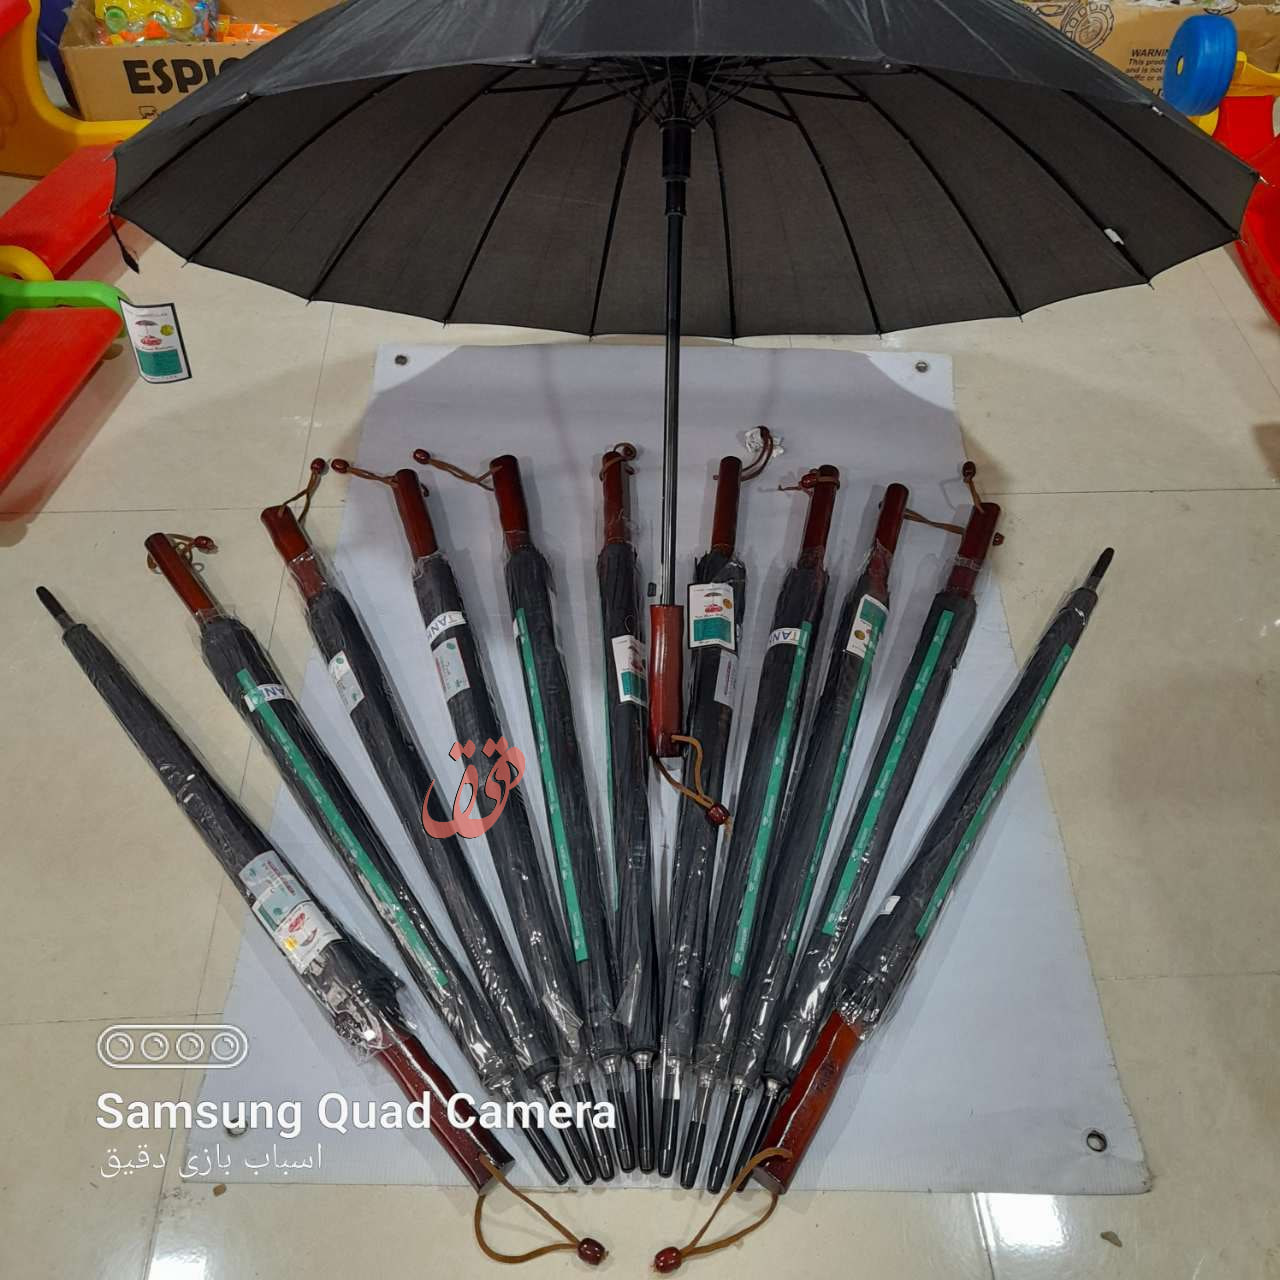 خرید چتر مردانه بزرگ به قیمت بسیار مناسب -  ضد آب خارجی مارک TANK